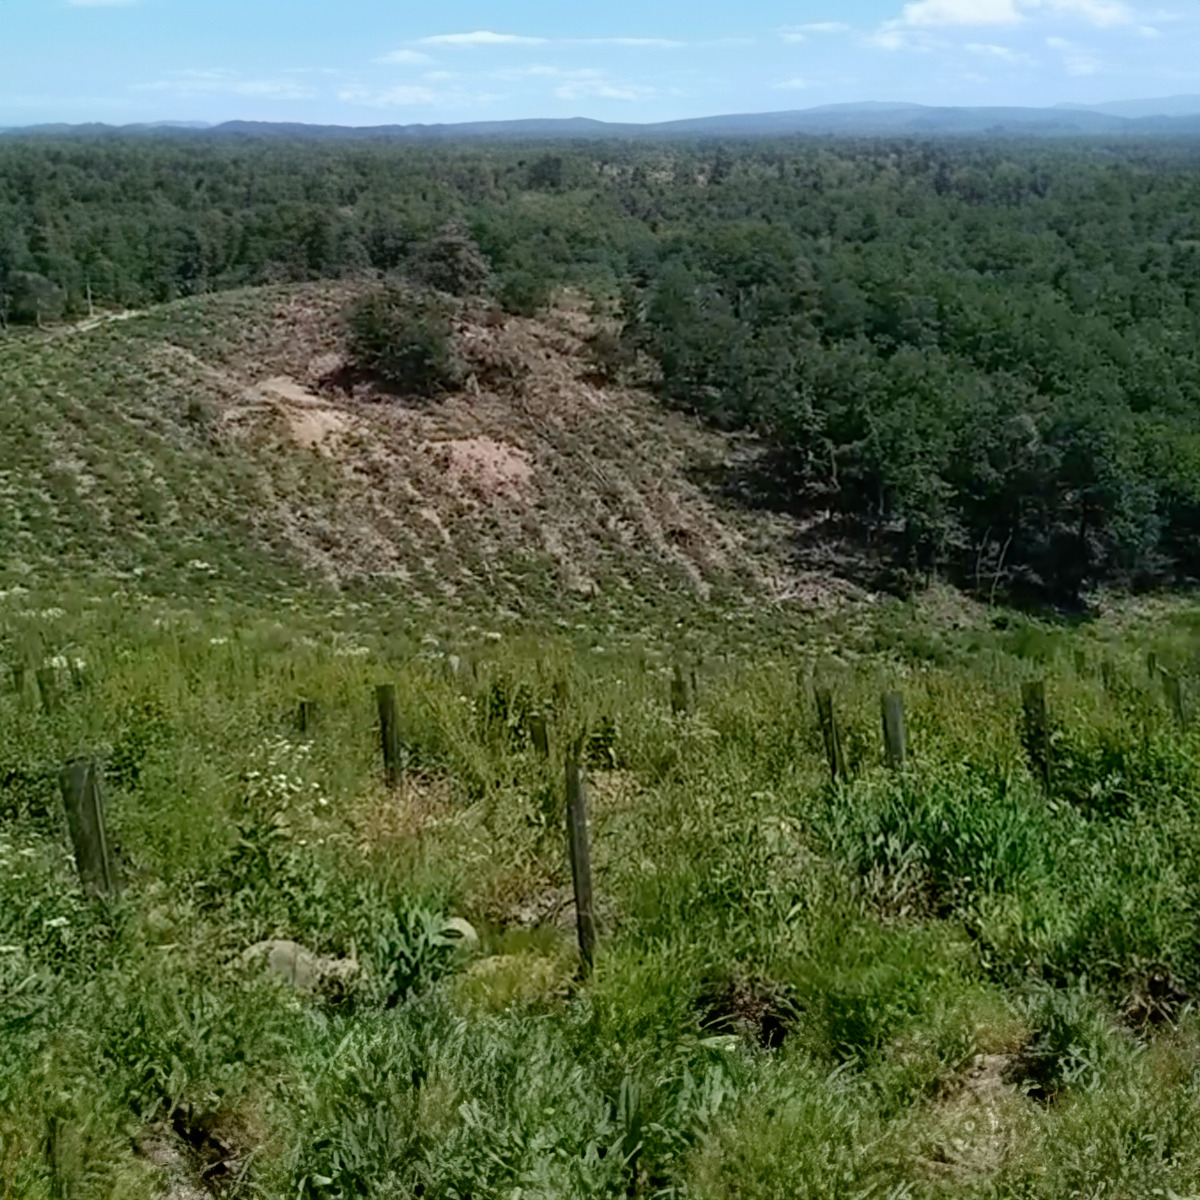 Terrain pour les arbres de reforest action